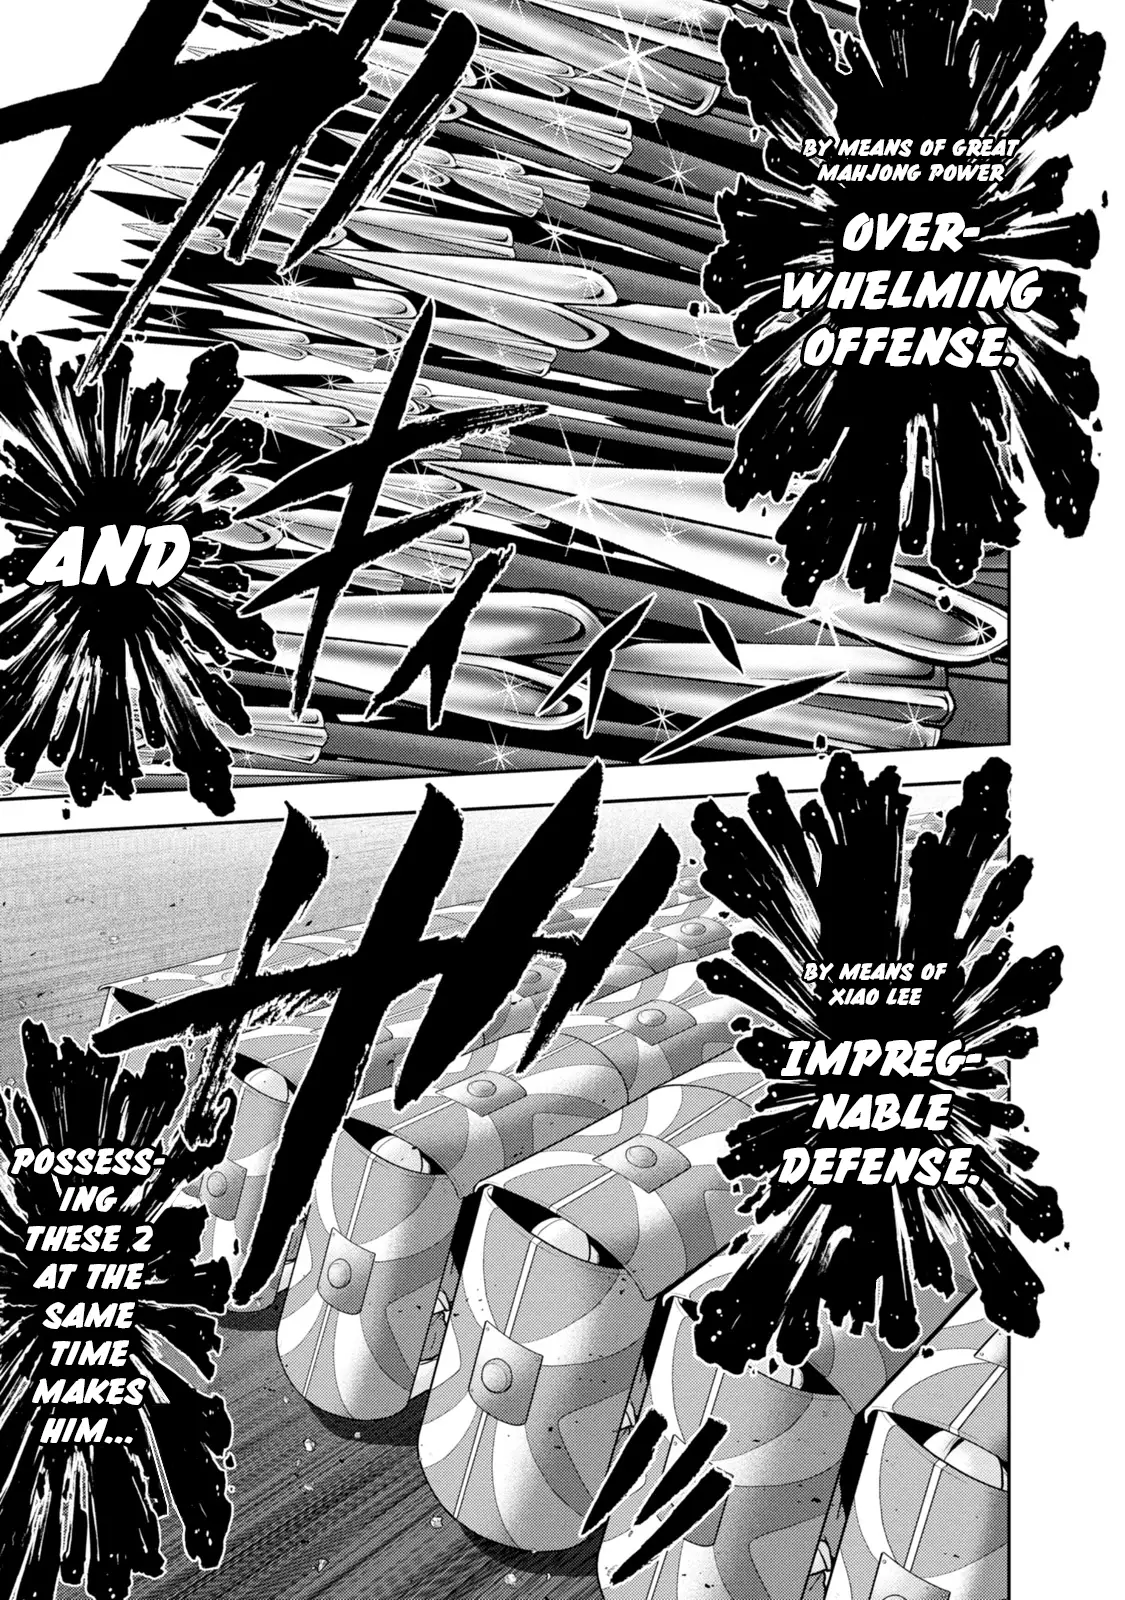 Mudazumo Naki Kaikaku - 134 page 8-51f6a25c